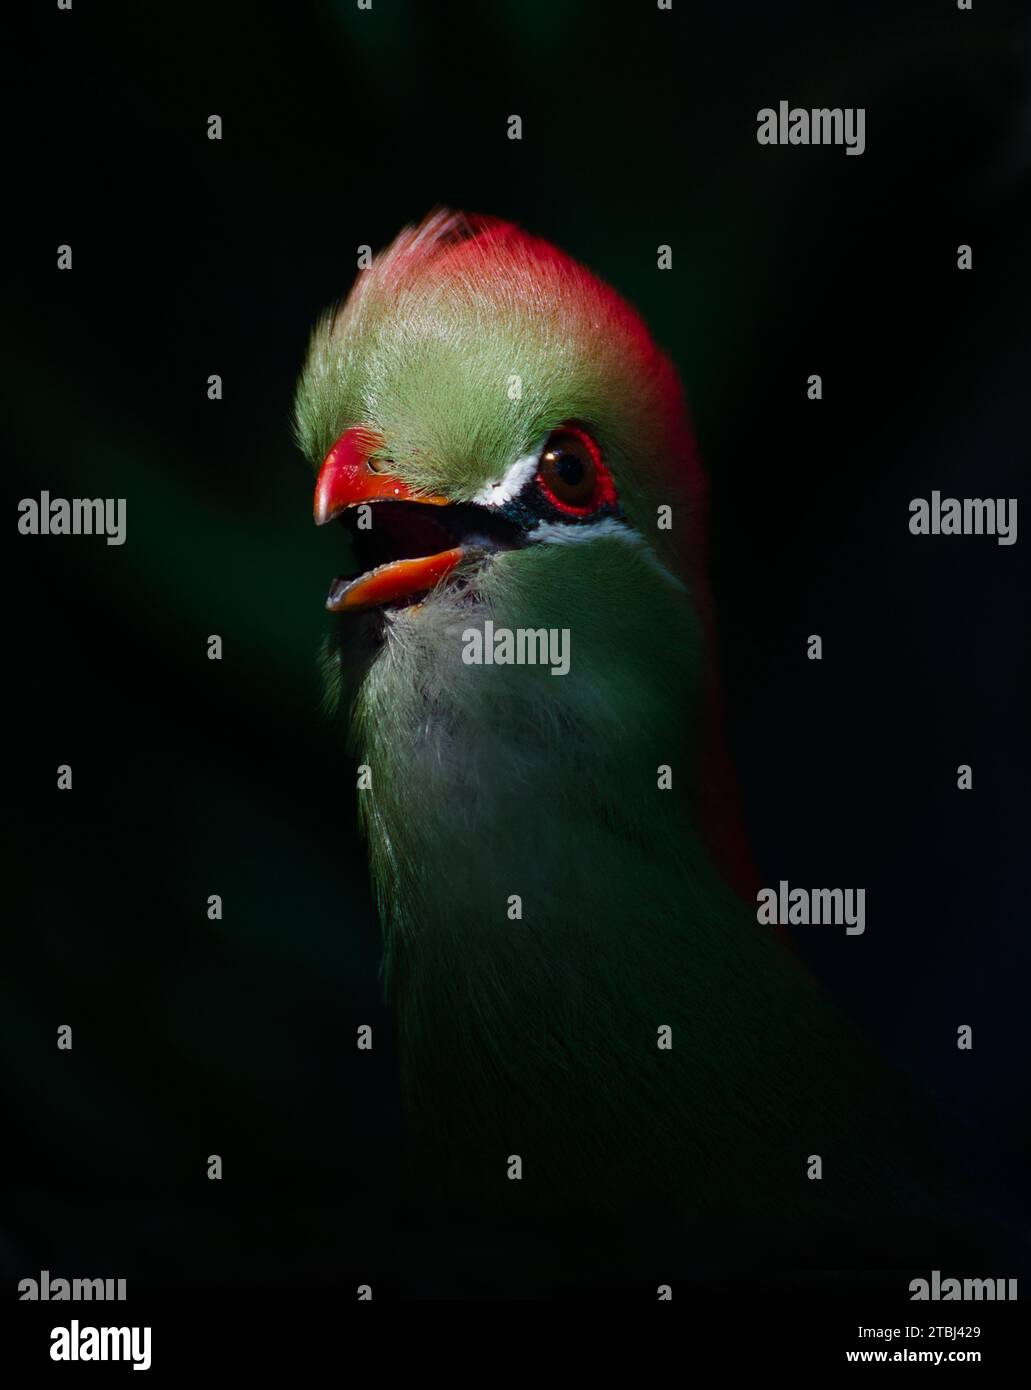 Sonnendurchfluteter Kopf Eines Gefangenen Fischers Turaco, Tauraco fischeri, farbenfroher exotischer Vogel mit offenem roten Schnabel Stockfoto